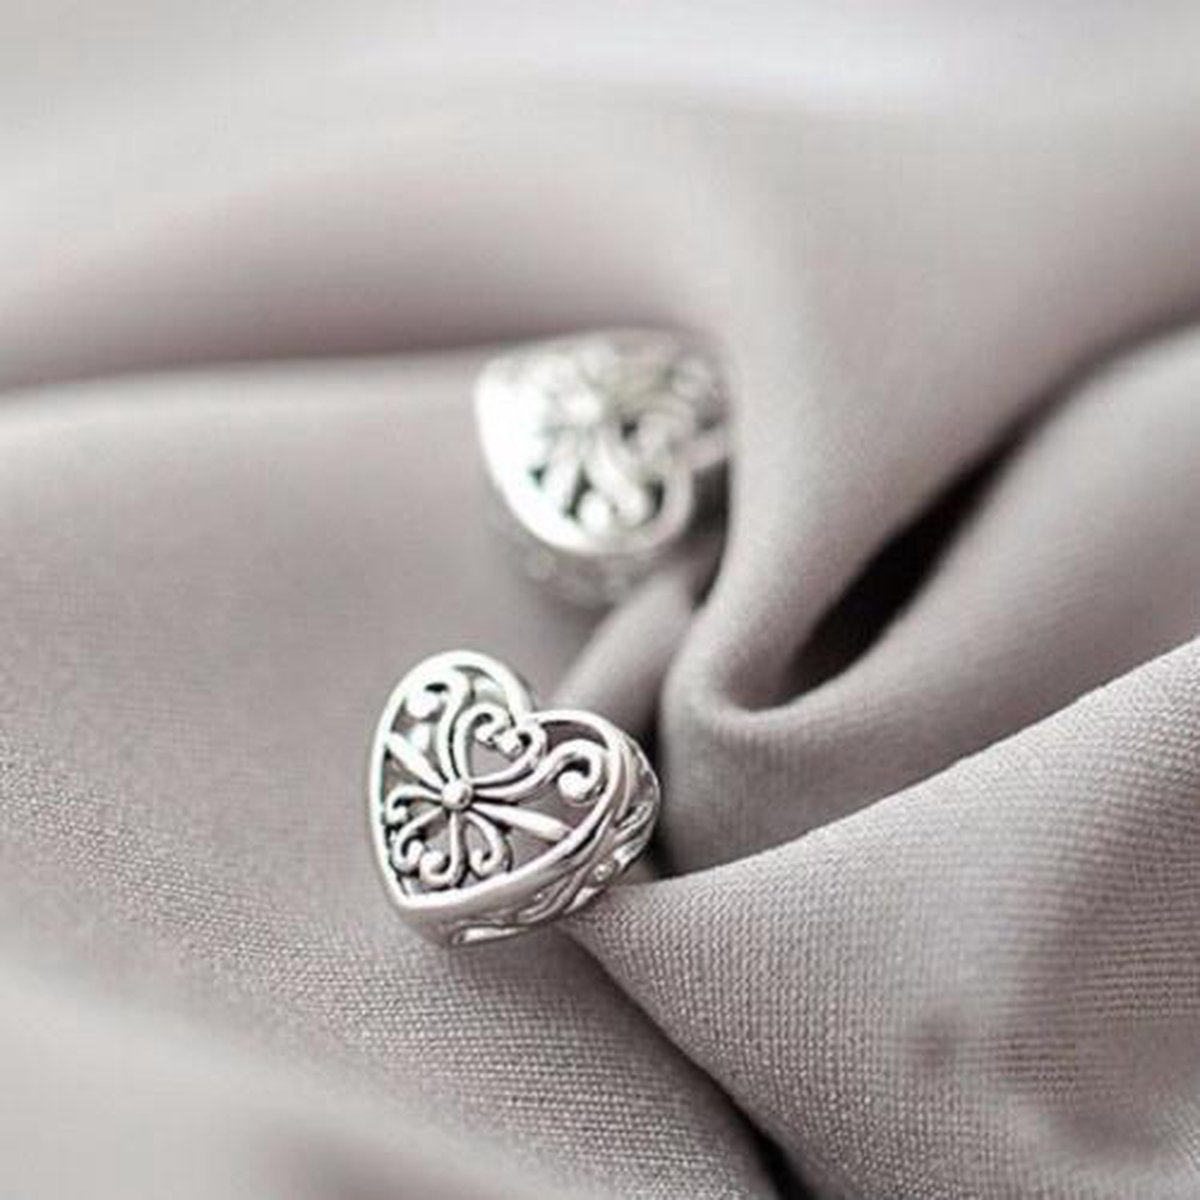 Geshe-Zilveren oorbellen dames vintage hart-zilver 925 oorknoppen-zilverkleurig-d7mm-retro sieraden-cadeau voor vrouw